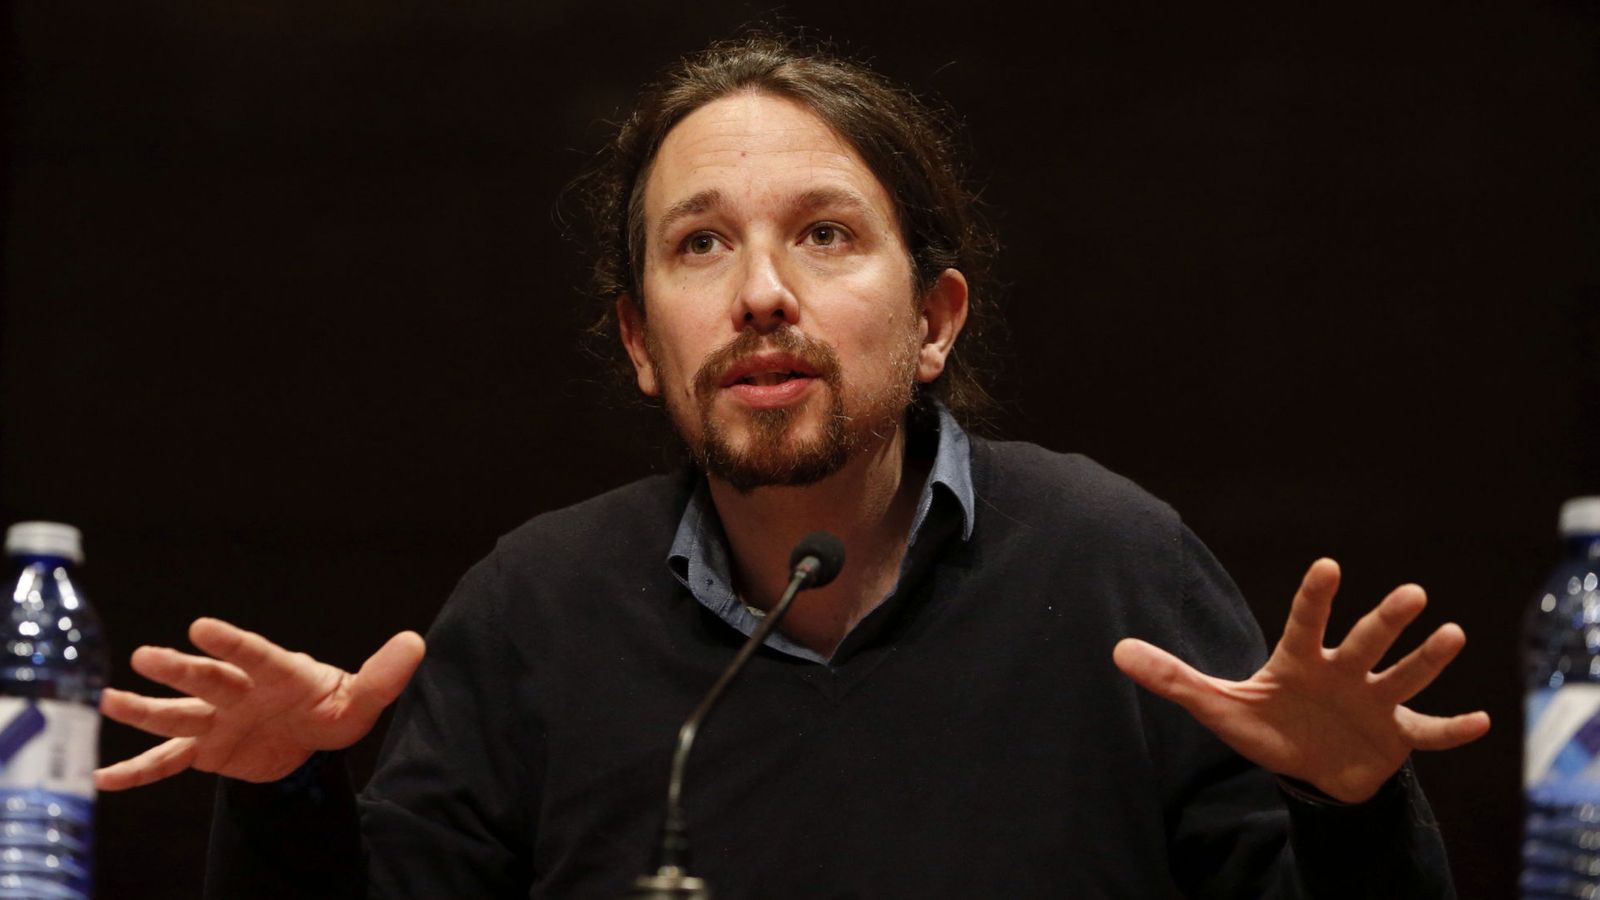 Foto: El líder de Podemos, Pablo Iglesias, durante la conferencia en la Facultad de Filosofía de la Complutense, este 21 de abril. (EFE)